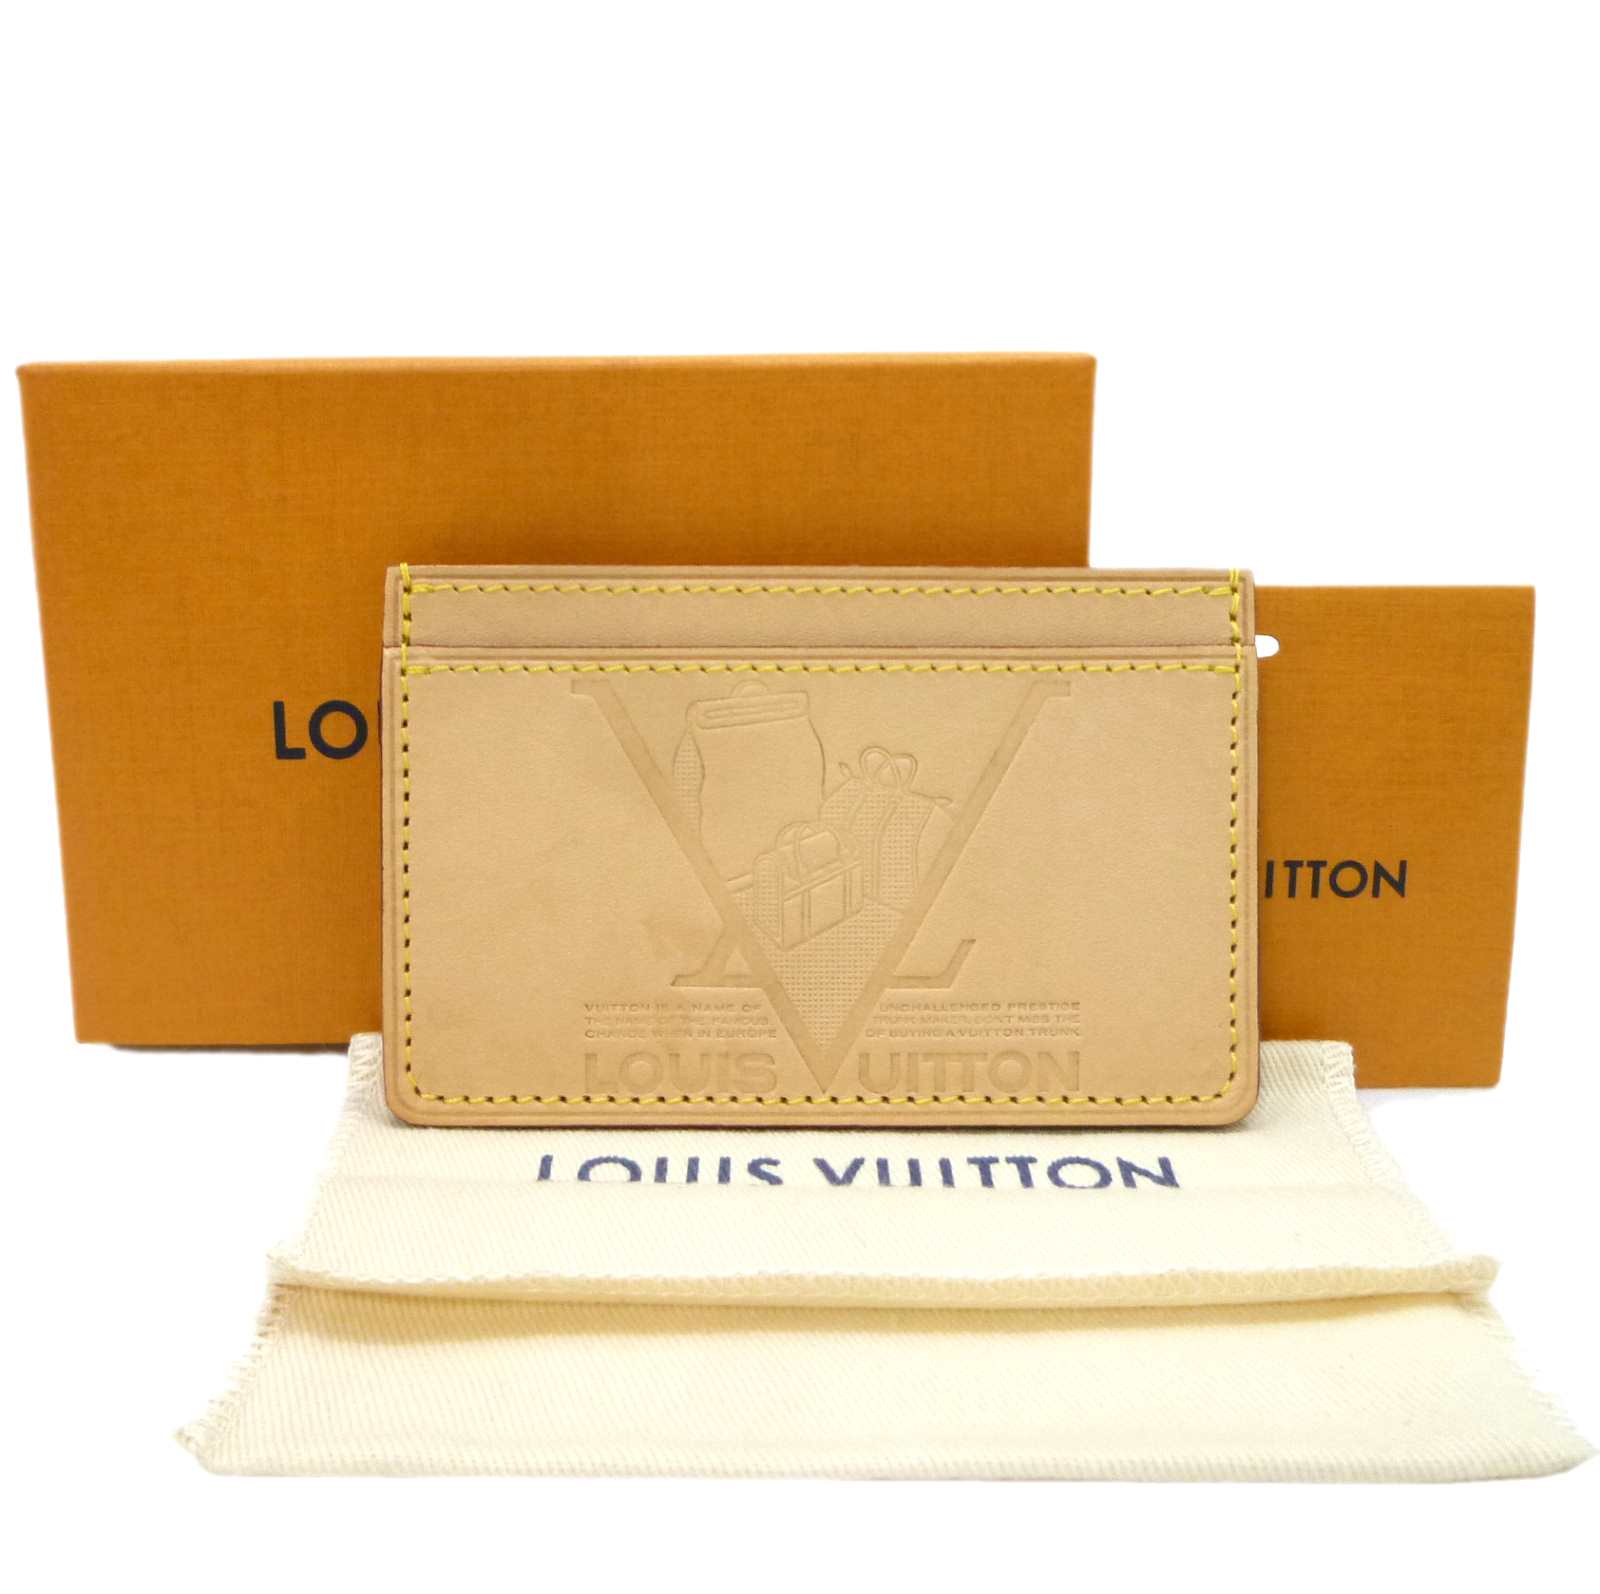 ロビのユニセックス財布小物一覧LOUIS VUITTON ヴィトン カードケース ポルトカルトサーンプル